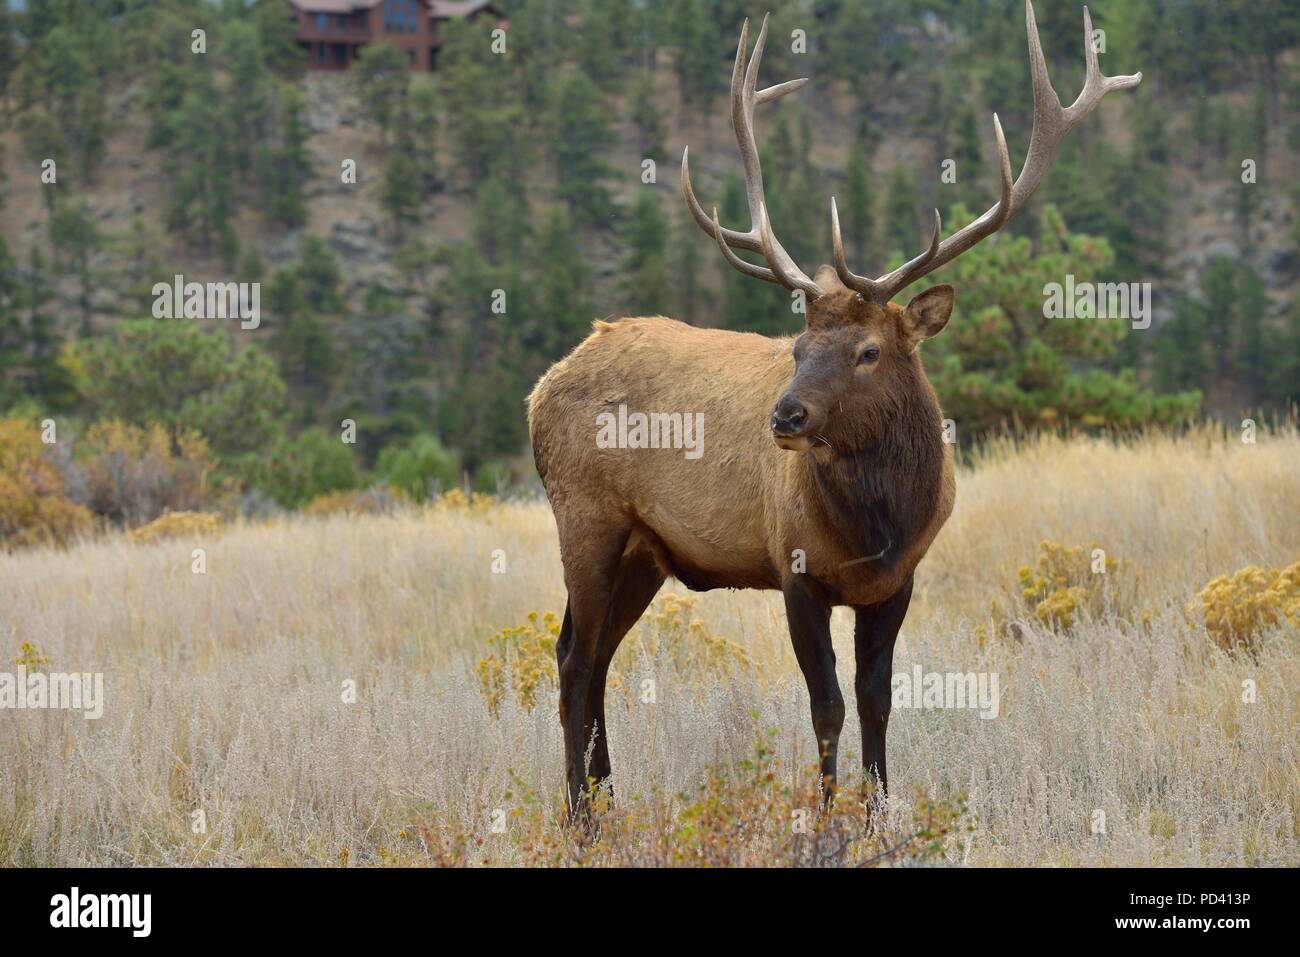 Incontro ravvicinato - Close-up piena vista del corpo di una forte coppia bull elk in stretta gamma. Parco Nazionale delle Montagne Rocciose, Colorado, Stati Uniti d'America. Foto Stock